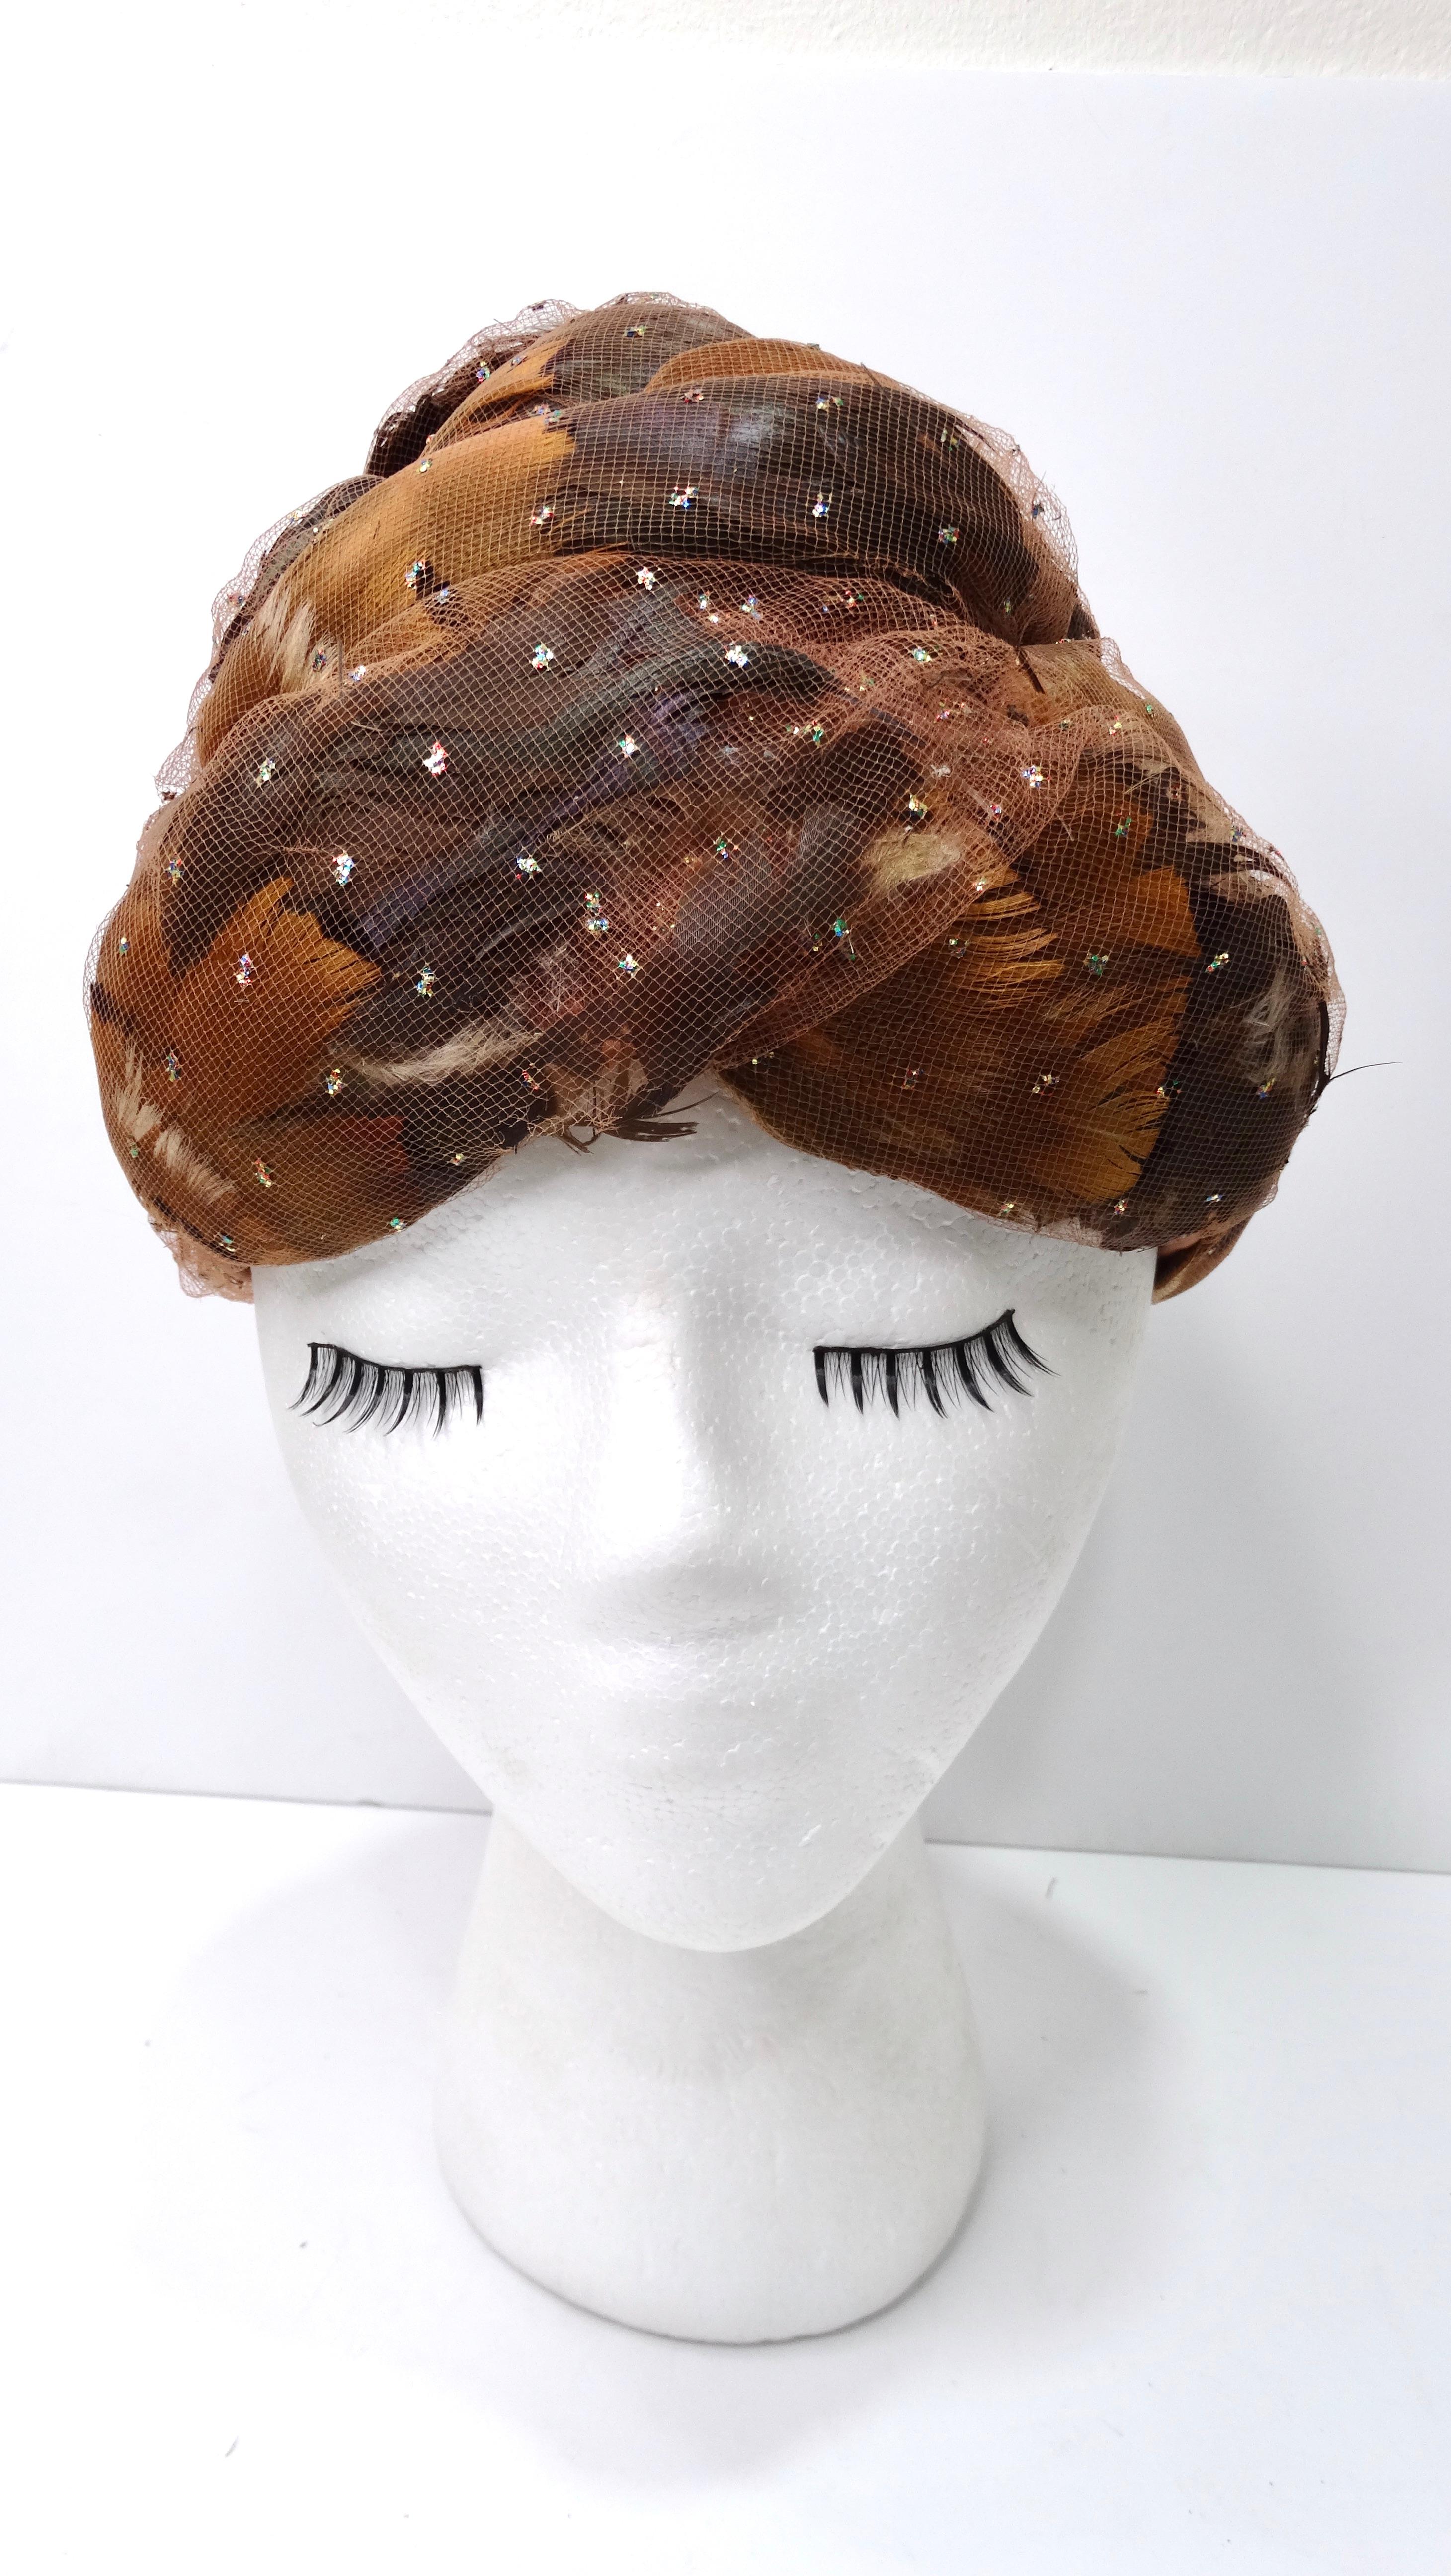 Erweitern Sie Ihre Accessoire-Sammlung mit diesem unglaublichen Turban-Kopfschmuck von Christian Dior aus den 1960er Jahren! Dieser wunderbar elegante und seltene Turban von Christian Dior zeichnet sich durch eine Kombination aus tiefem Kamel und